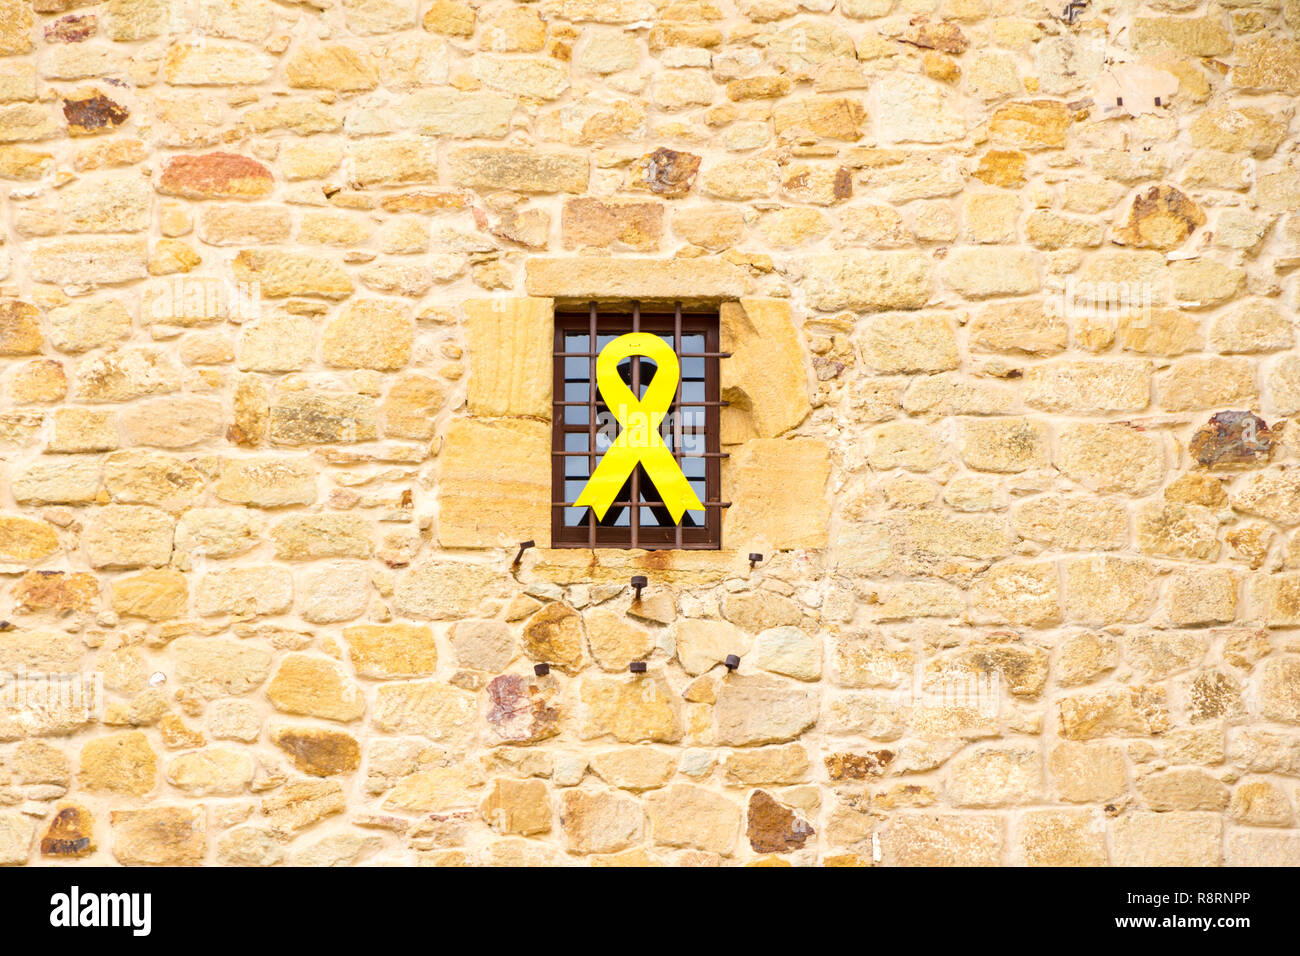 Das gelbe Band symbolisiert katalanischen Unabhängigkeit hängen aus einem Gebäude in Katalonien Stockfoto